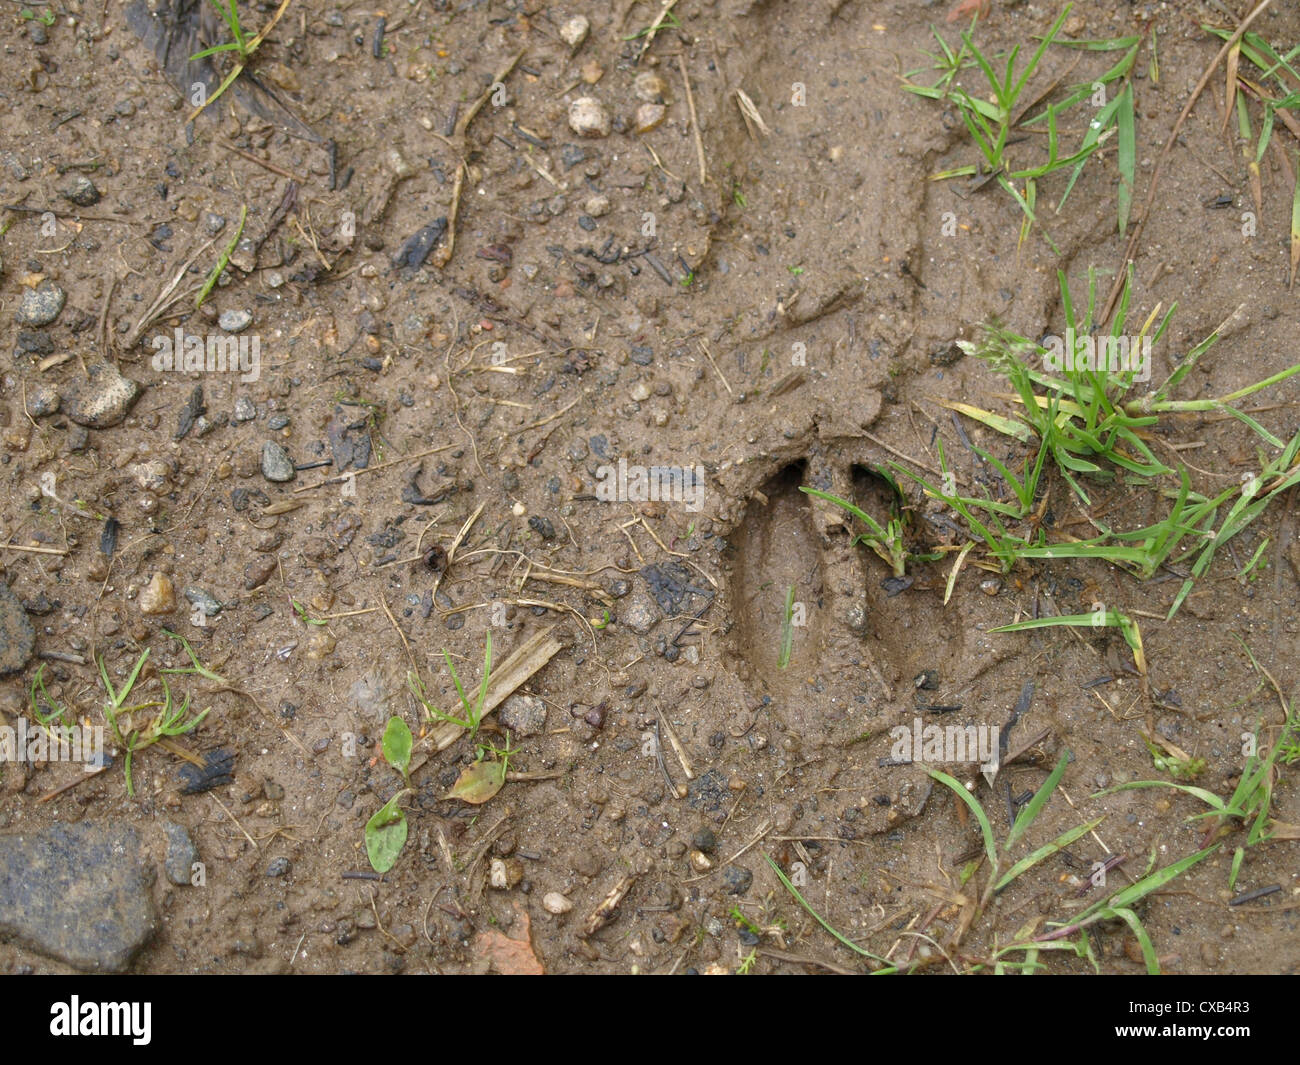 Una pista de un ciervo en el suelo / Spur eines Erdboden Rehs im Foto de stock